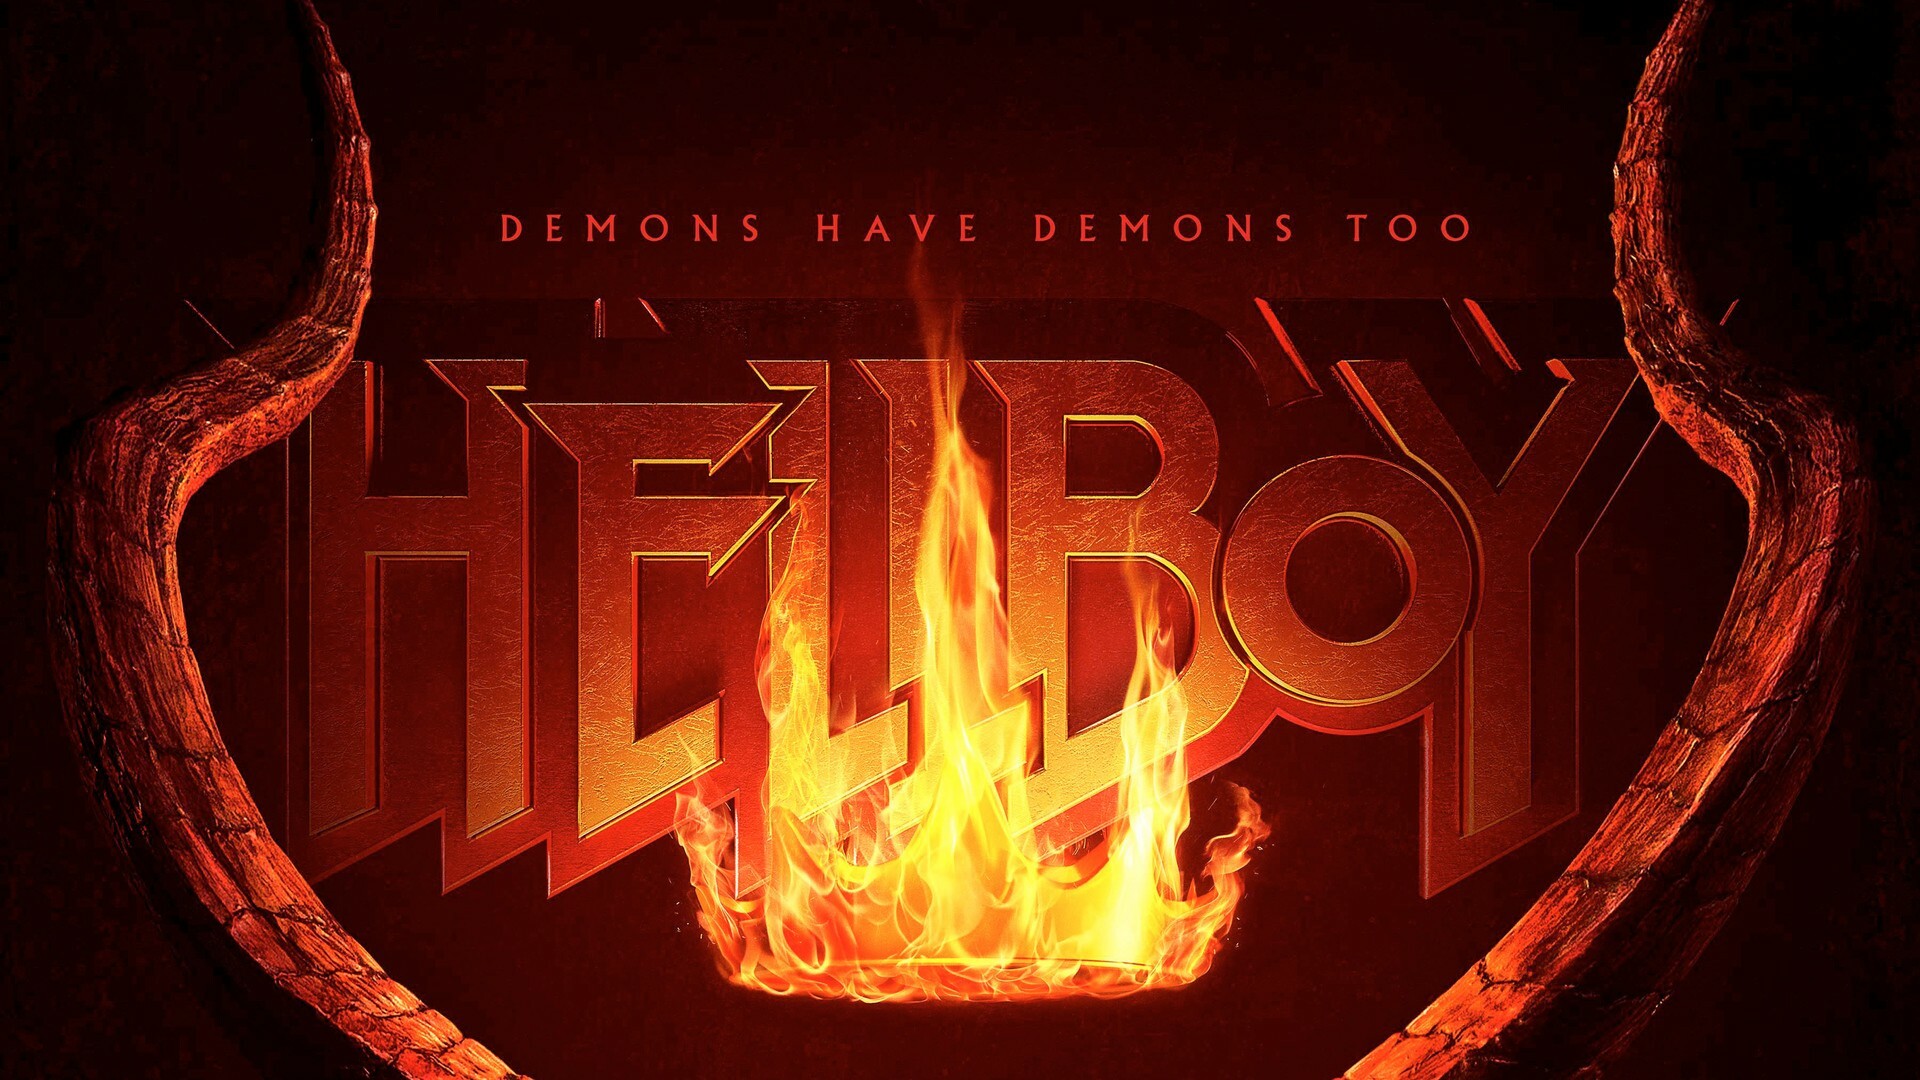 Hellboy 2019: Movie wallpaper, Movie poster, 1920x1080 Full HD Desktop